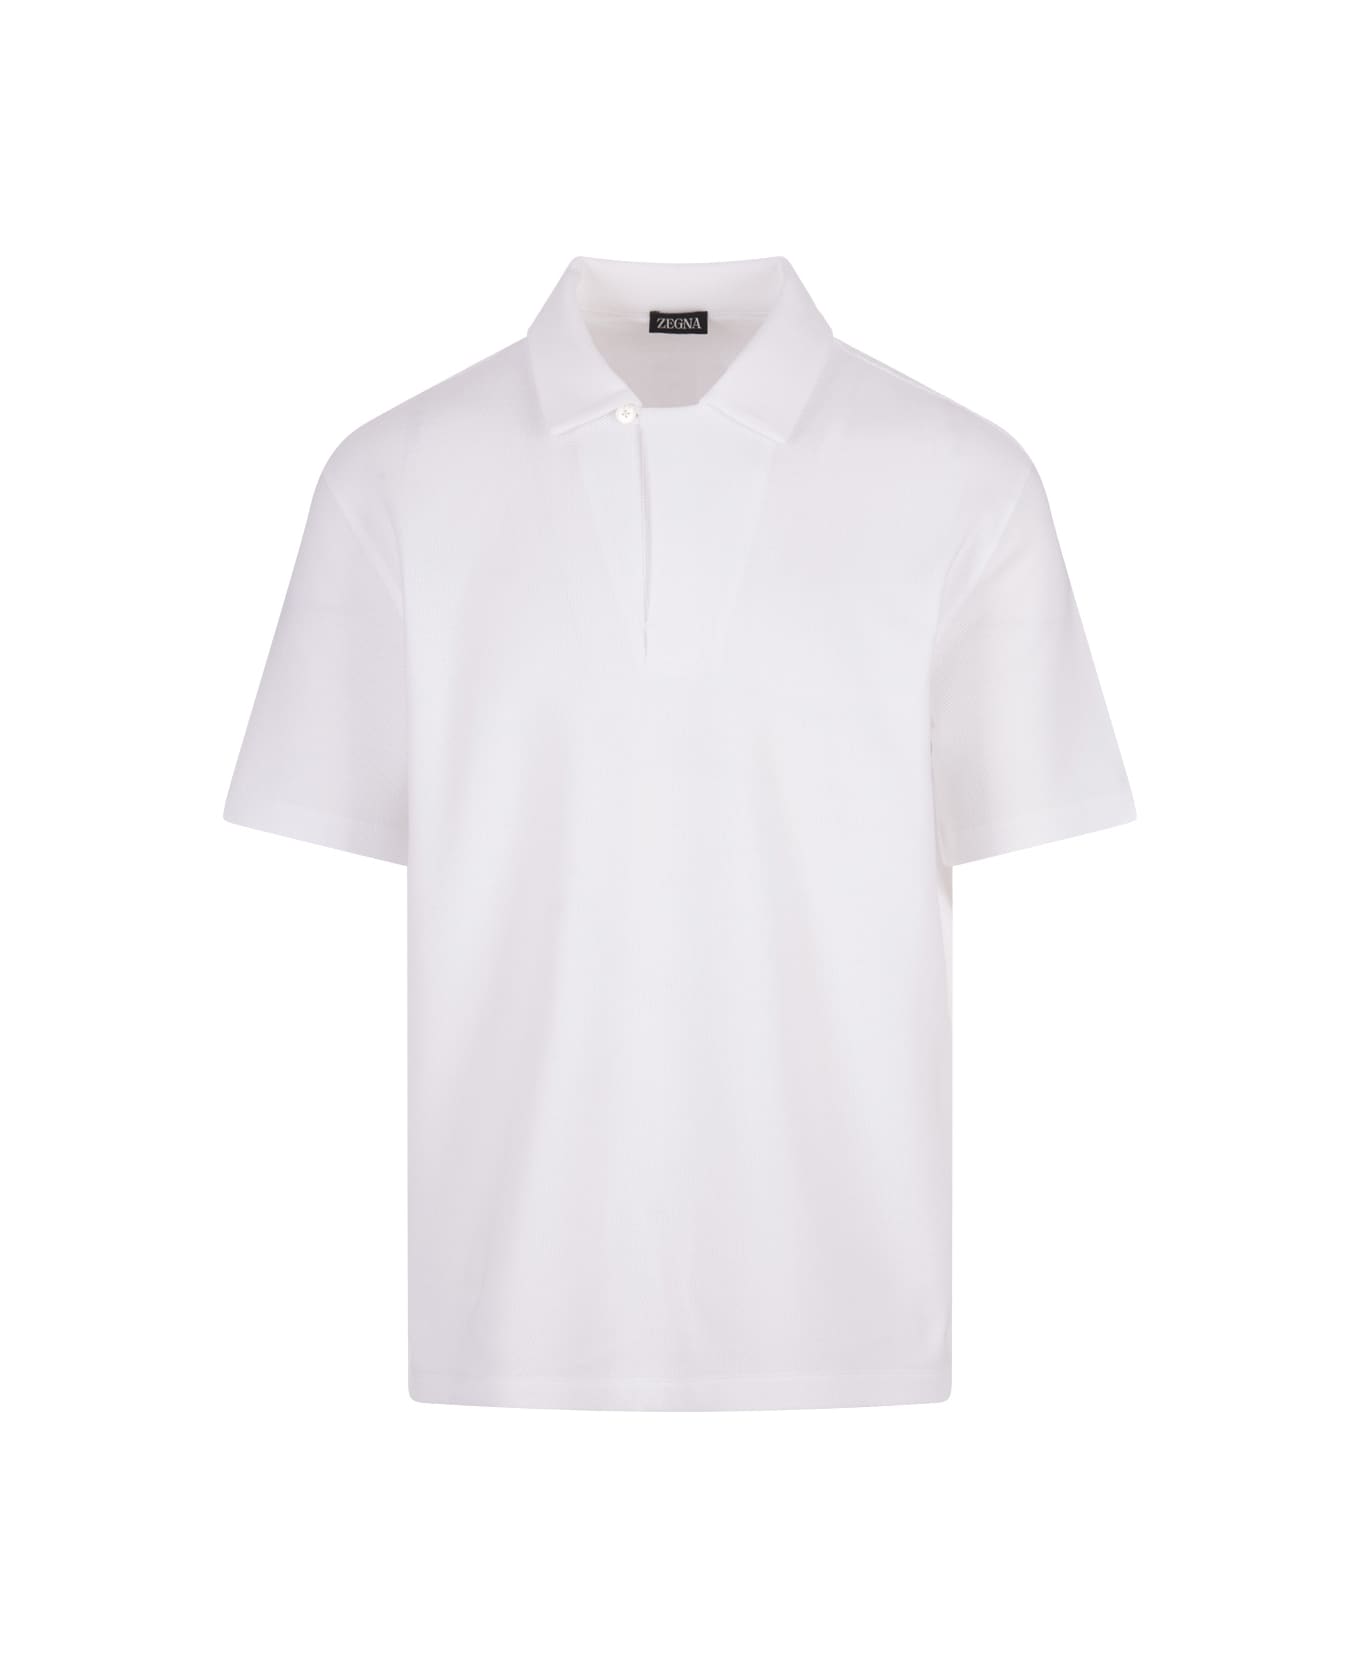 Zegna White Honeycomb Cotton Polo Shirt - White ポロシャツ